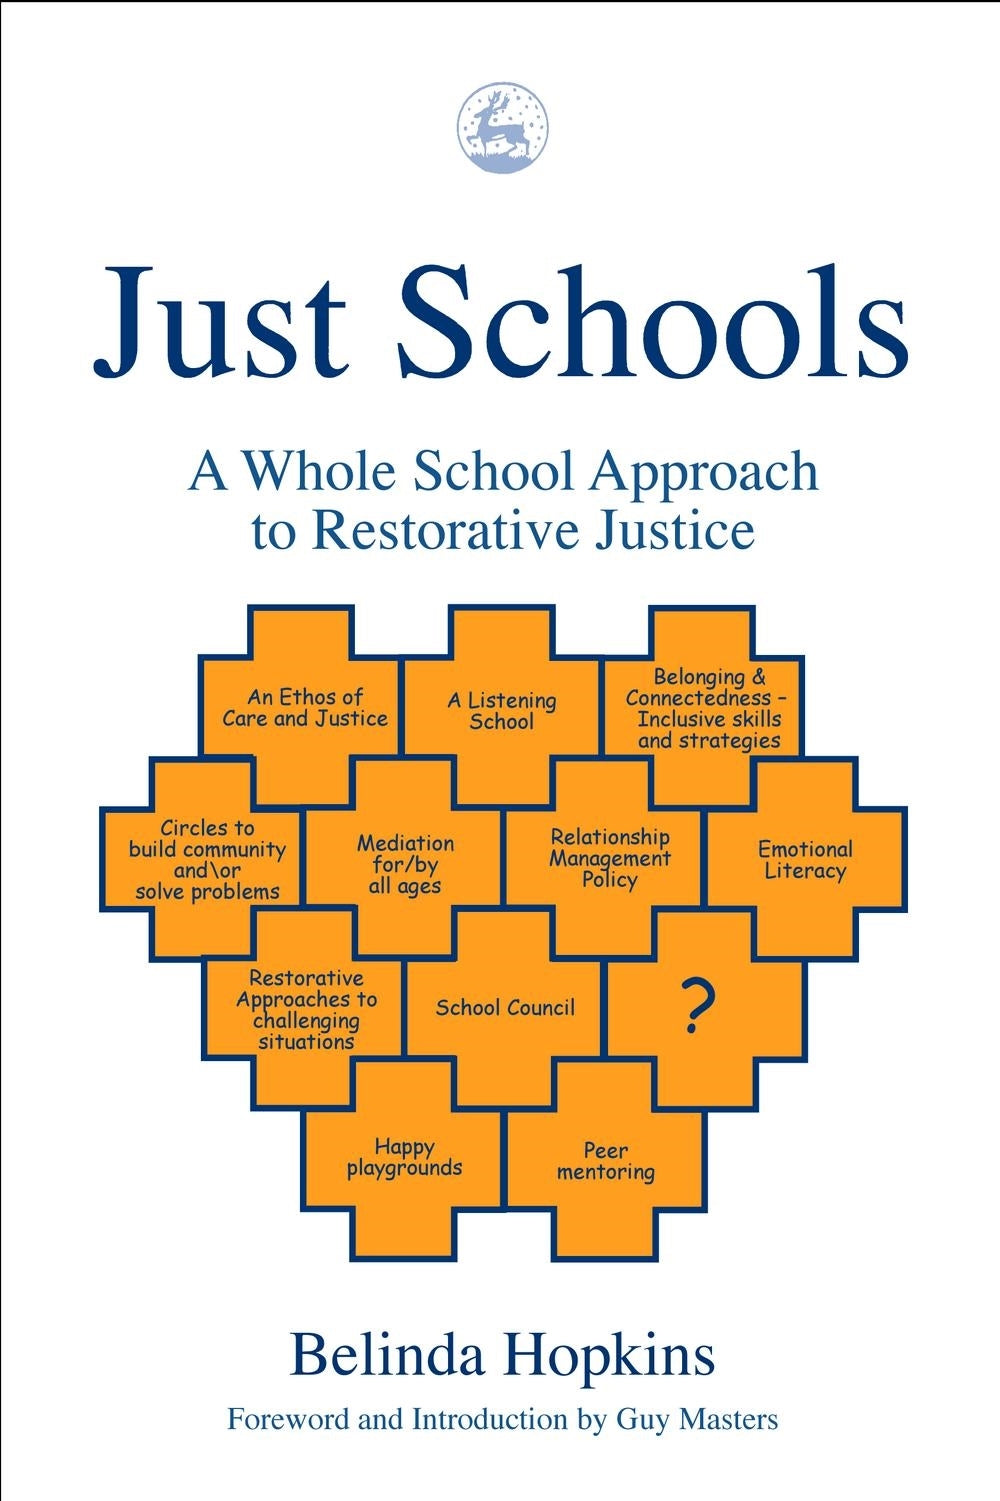 Just Schools by Belinda Hopkins